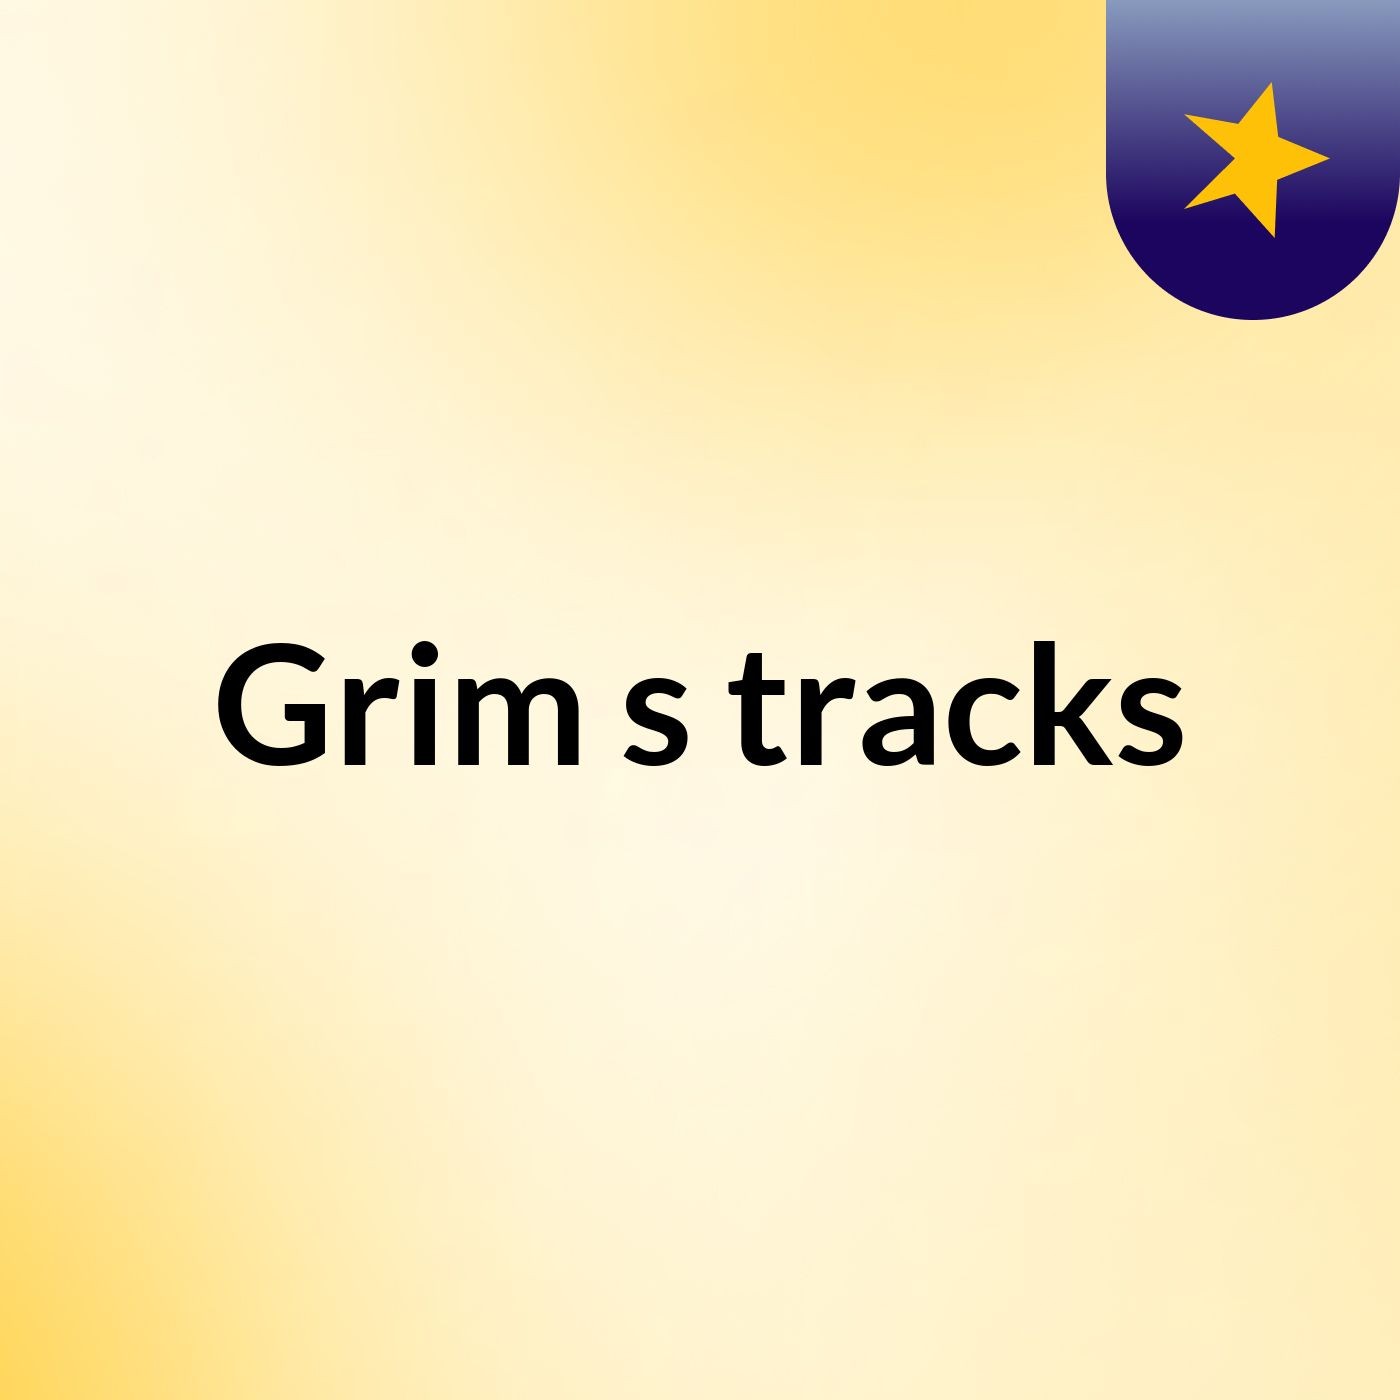 Grim's tracks